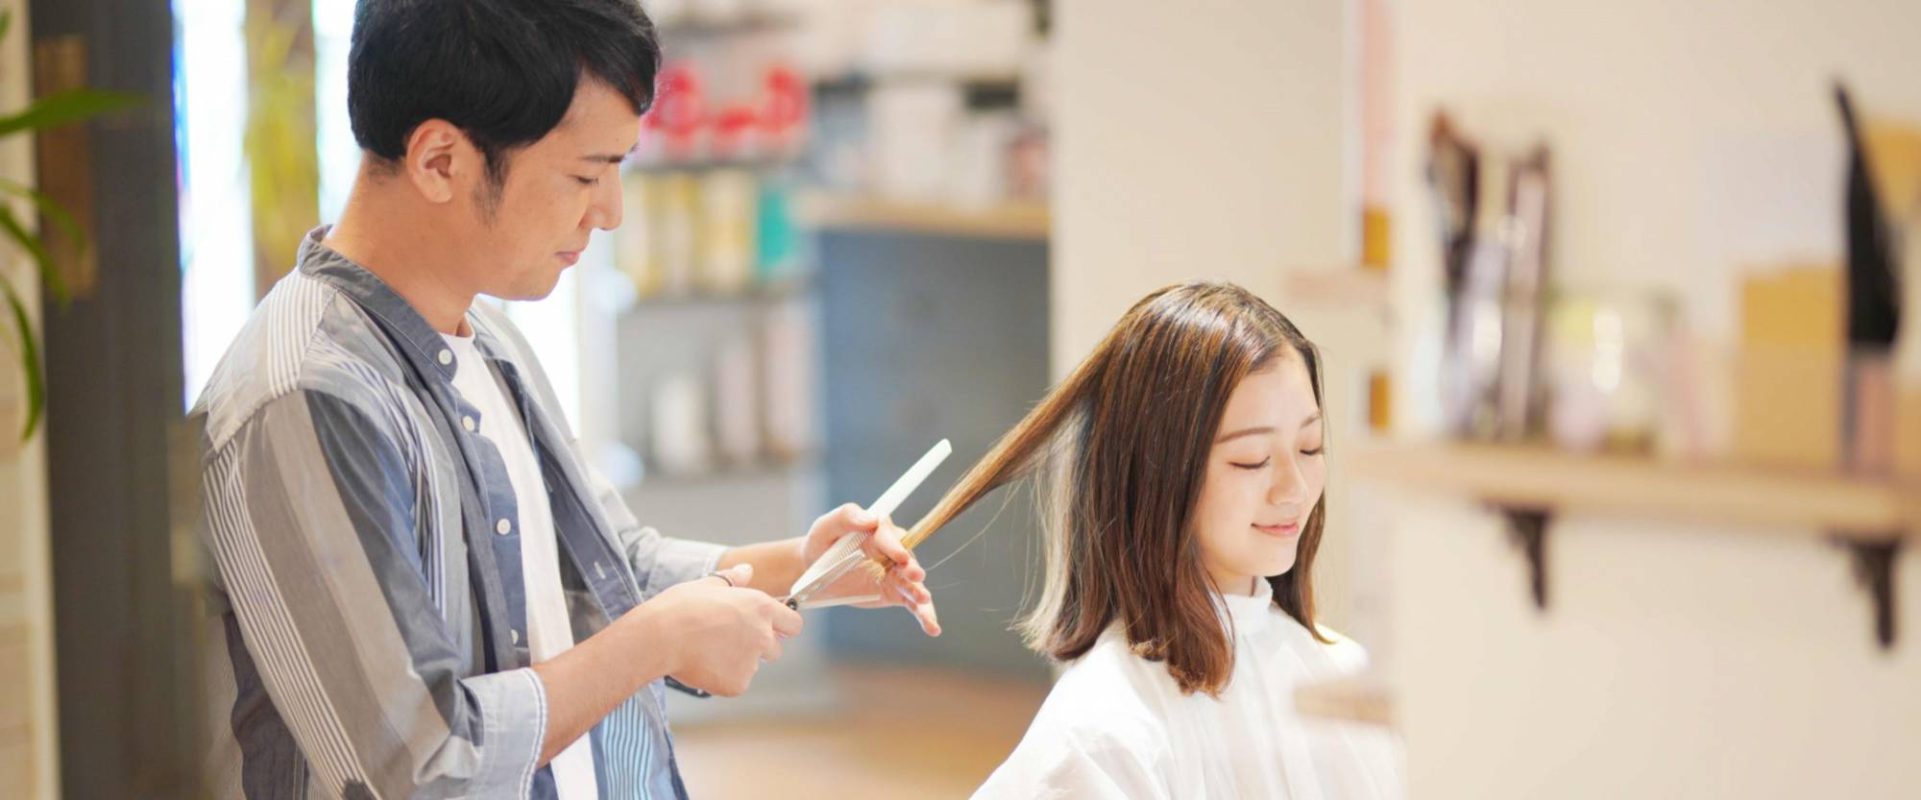 “Haircut Day” di Jepang, Bentuk Protes Wanita ke Pemerintah?